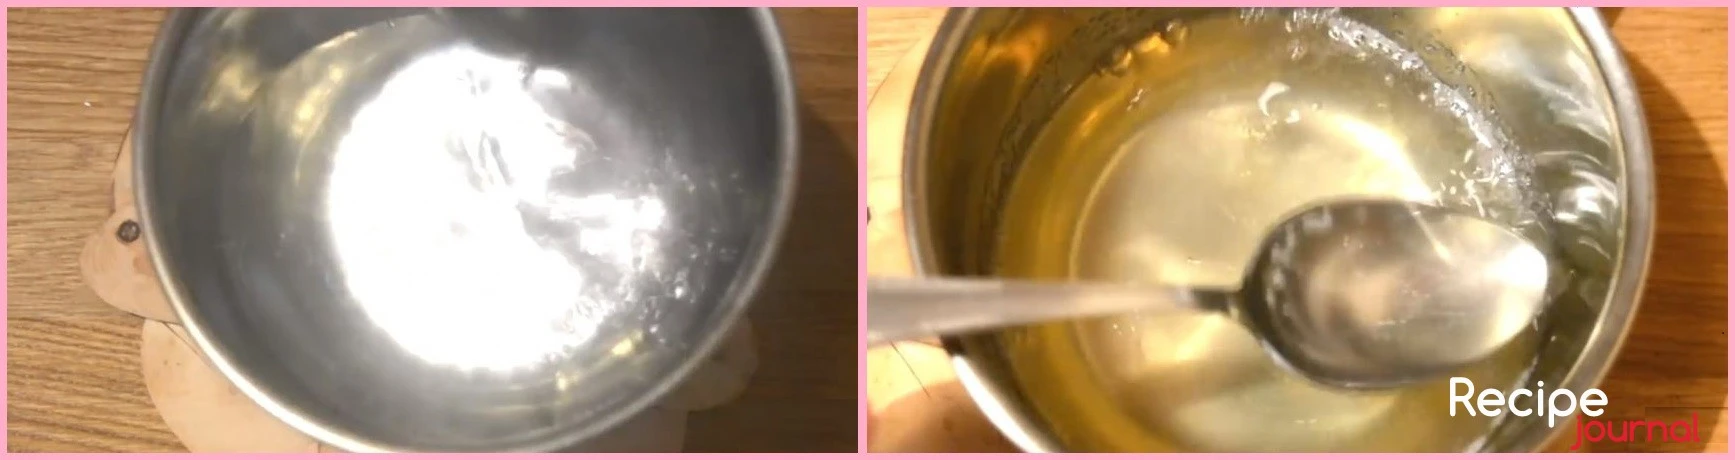 Для желе - желатин заливаем небольшим количеством воды и отставляем для набухания. В кастрюльке соединяем воду, лимонную кислоту и доводим до кипения, добавляем набухший желатин, постоянно помешивая, снова доводим до кипения, чтобы желатин полностью растворился. Когда желе остынет, (но не застынет!), заливаем клубнику и отправляем в холод.  Вкусный десерт, клубничный тарт с заварным кремом готов!